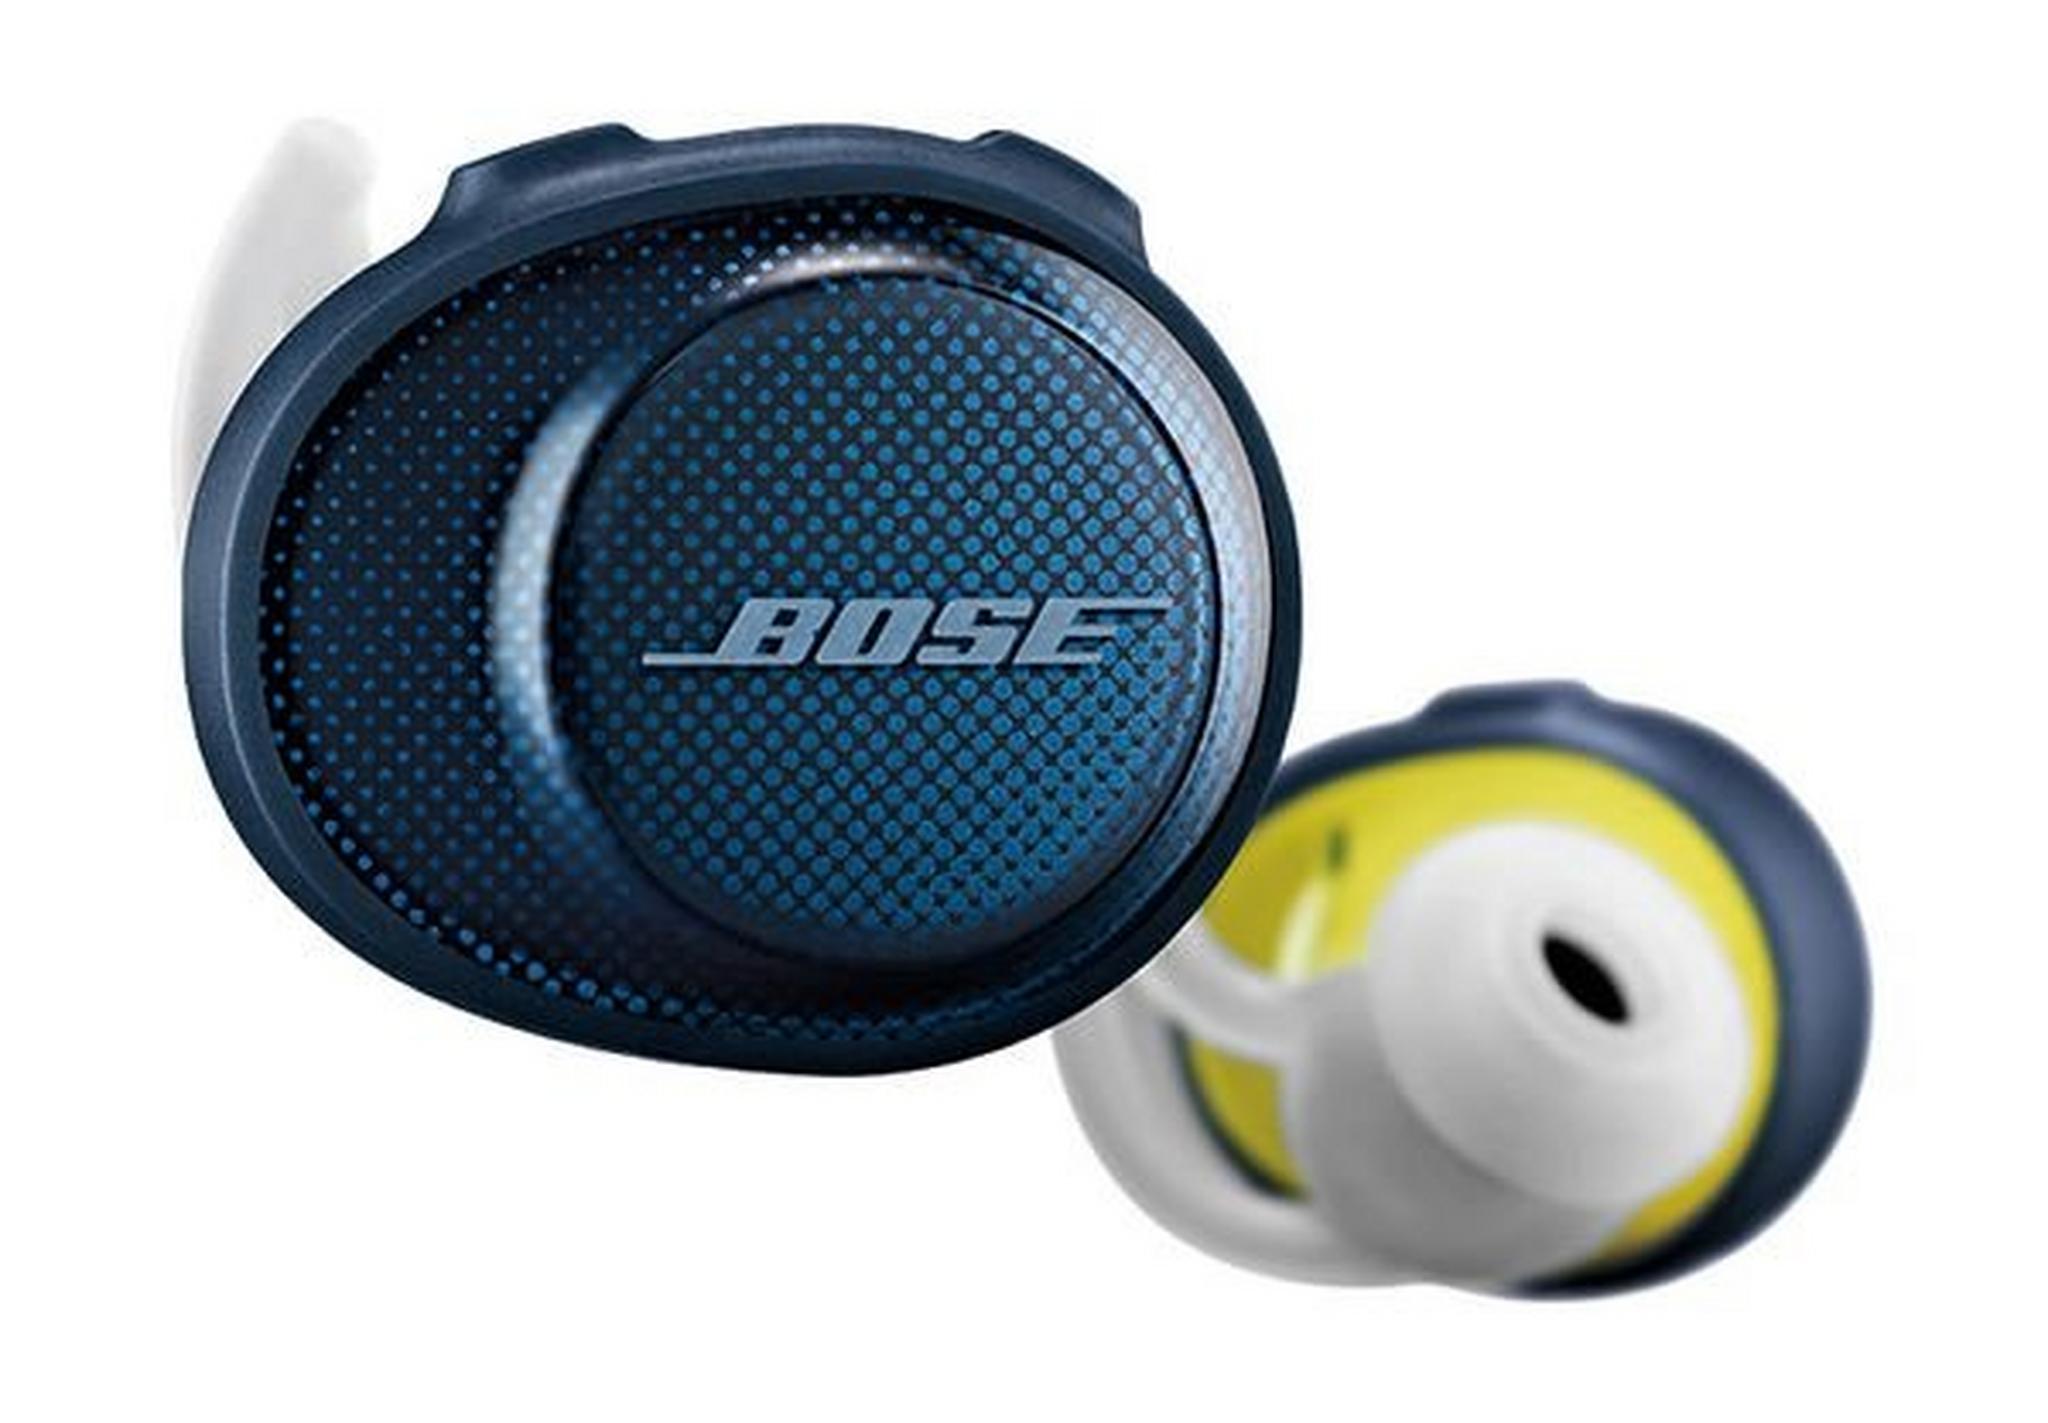 Bose SoundSport Free: True Wireless Earbuds - Navy